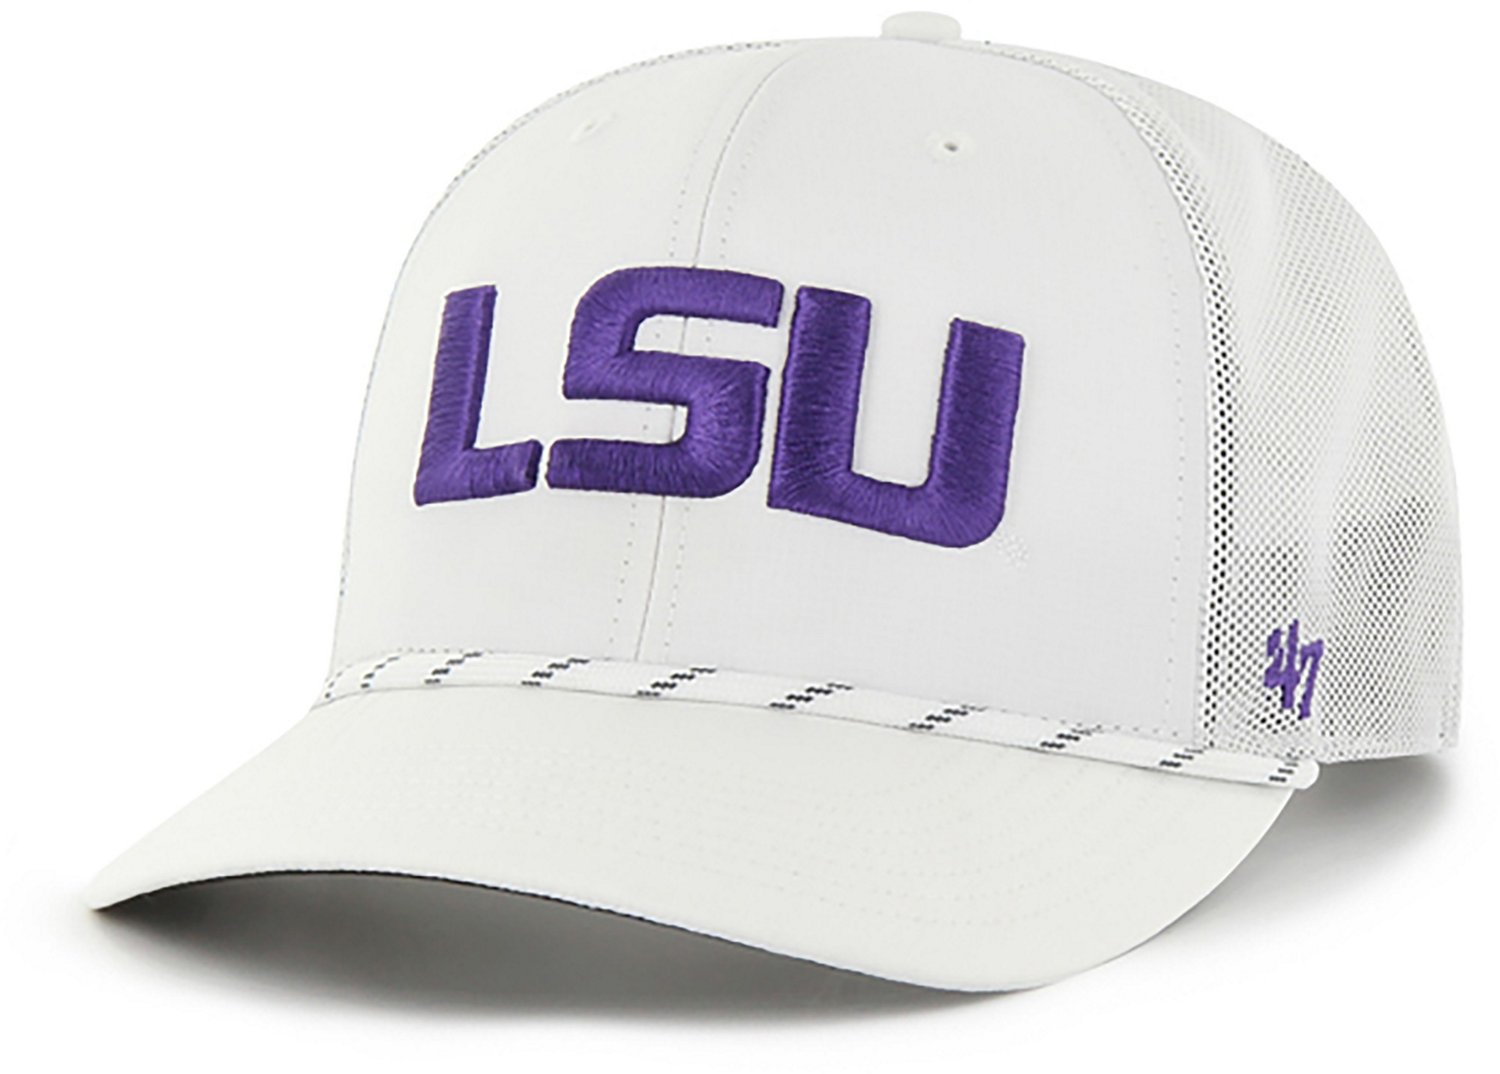 Louisiana State University Adjustable Hat, Snapback, LSU Tigers Adjustable  Caps